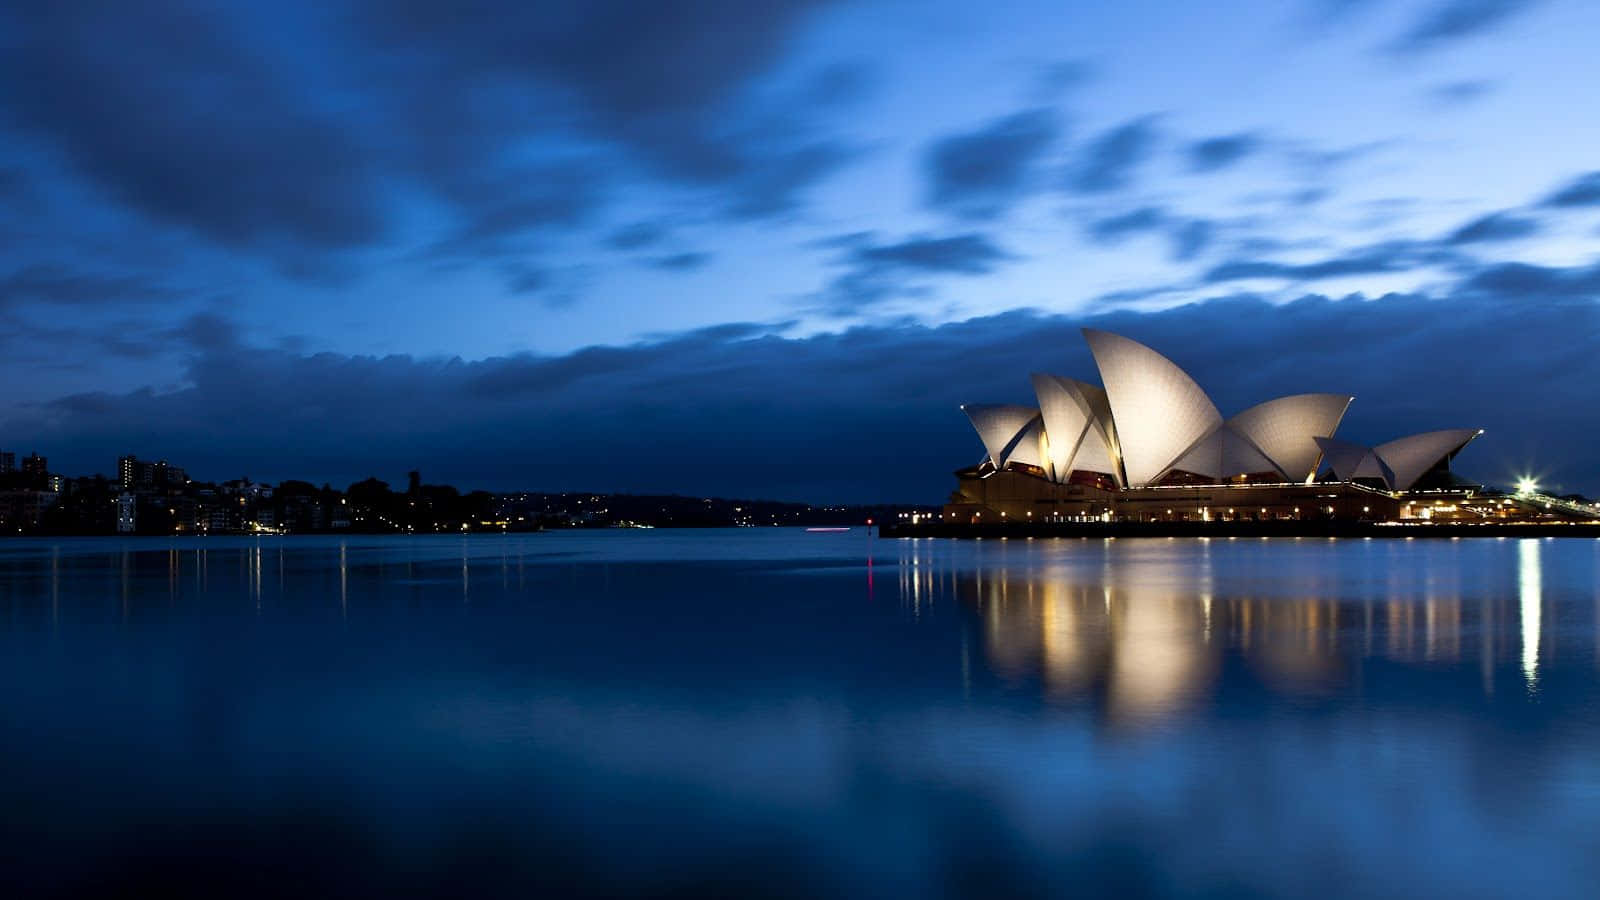 Lamejor Imagen De Fondo De Escritorio Para Viajar: Sydney Opera House. Fondo de pantalla